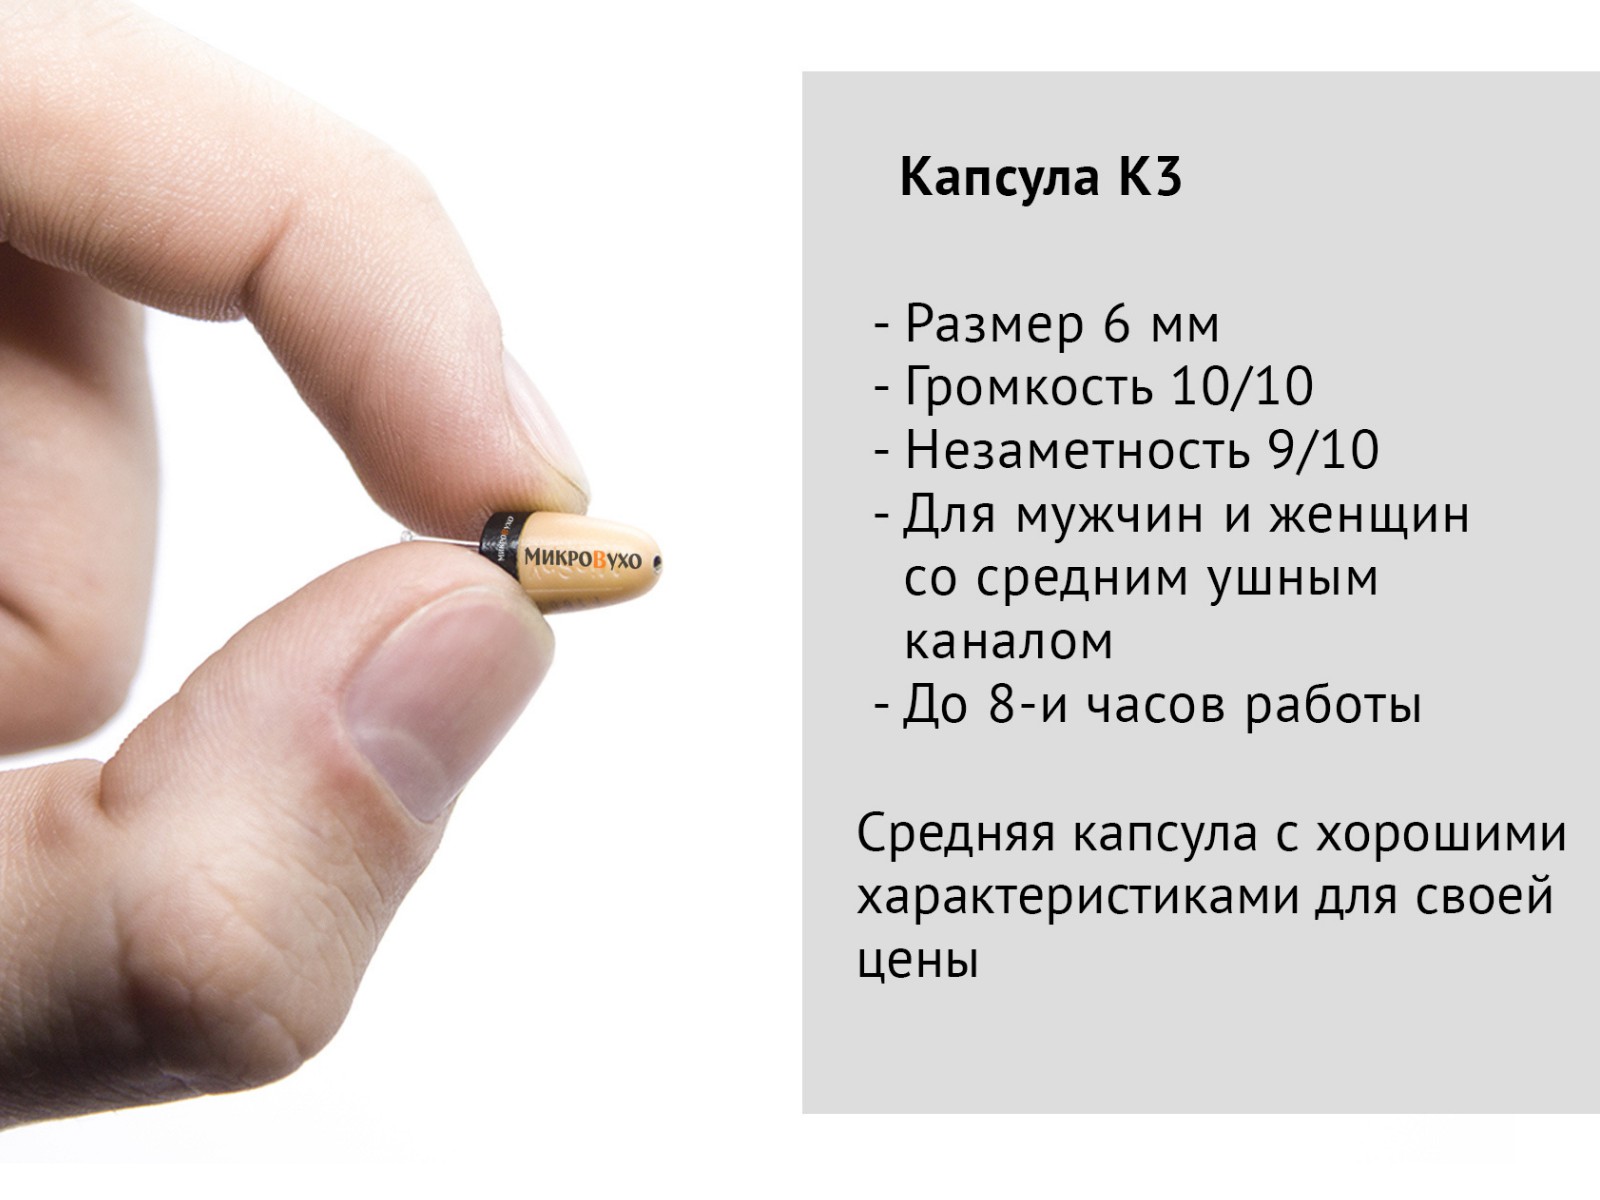 Гарнитура Bluetooth Plantronics с капсульным микронаушником K3 6 мм 6